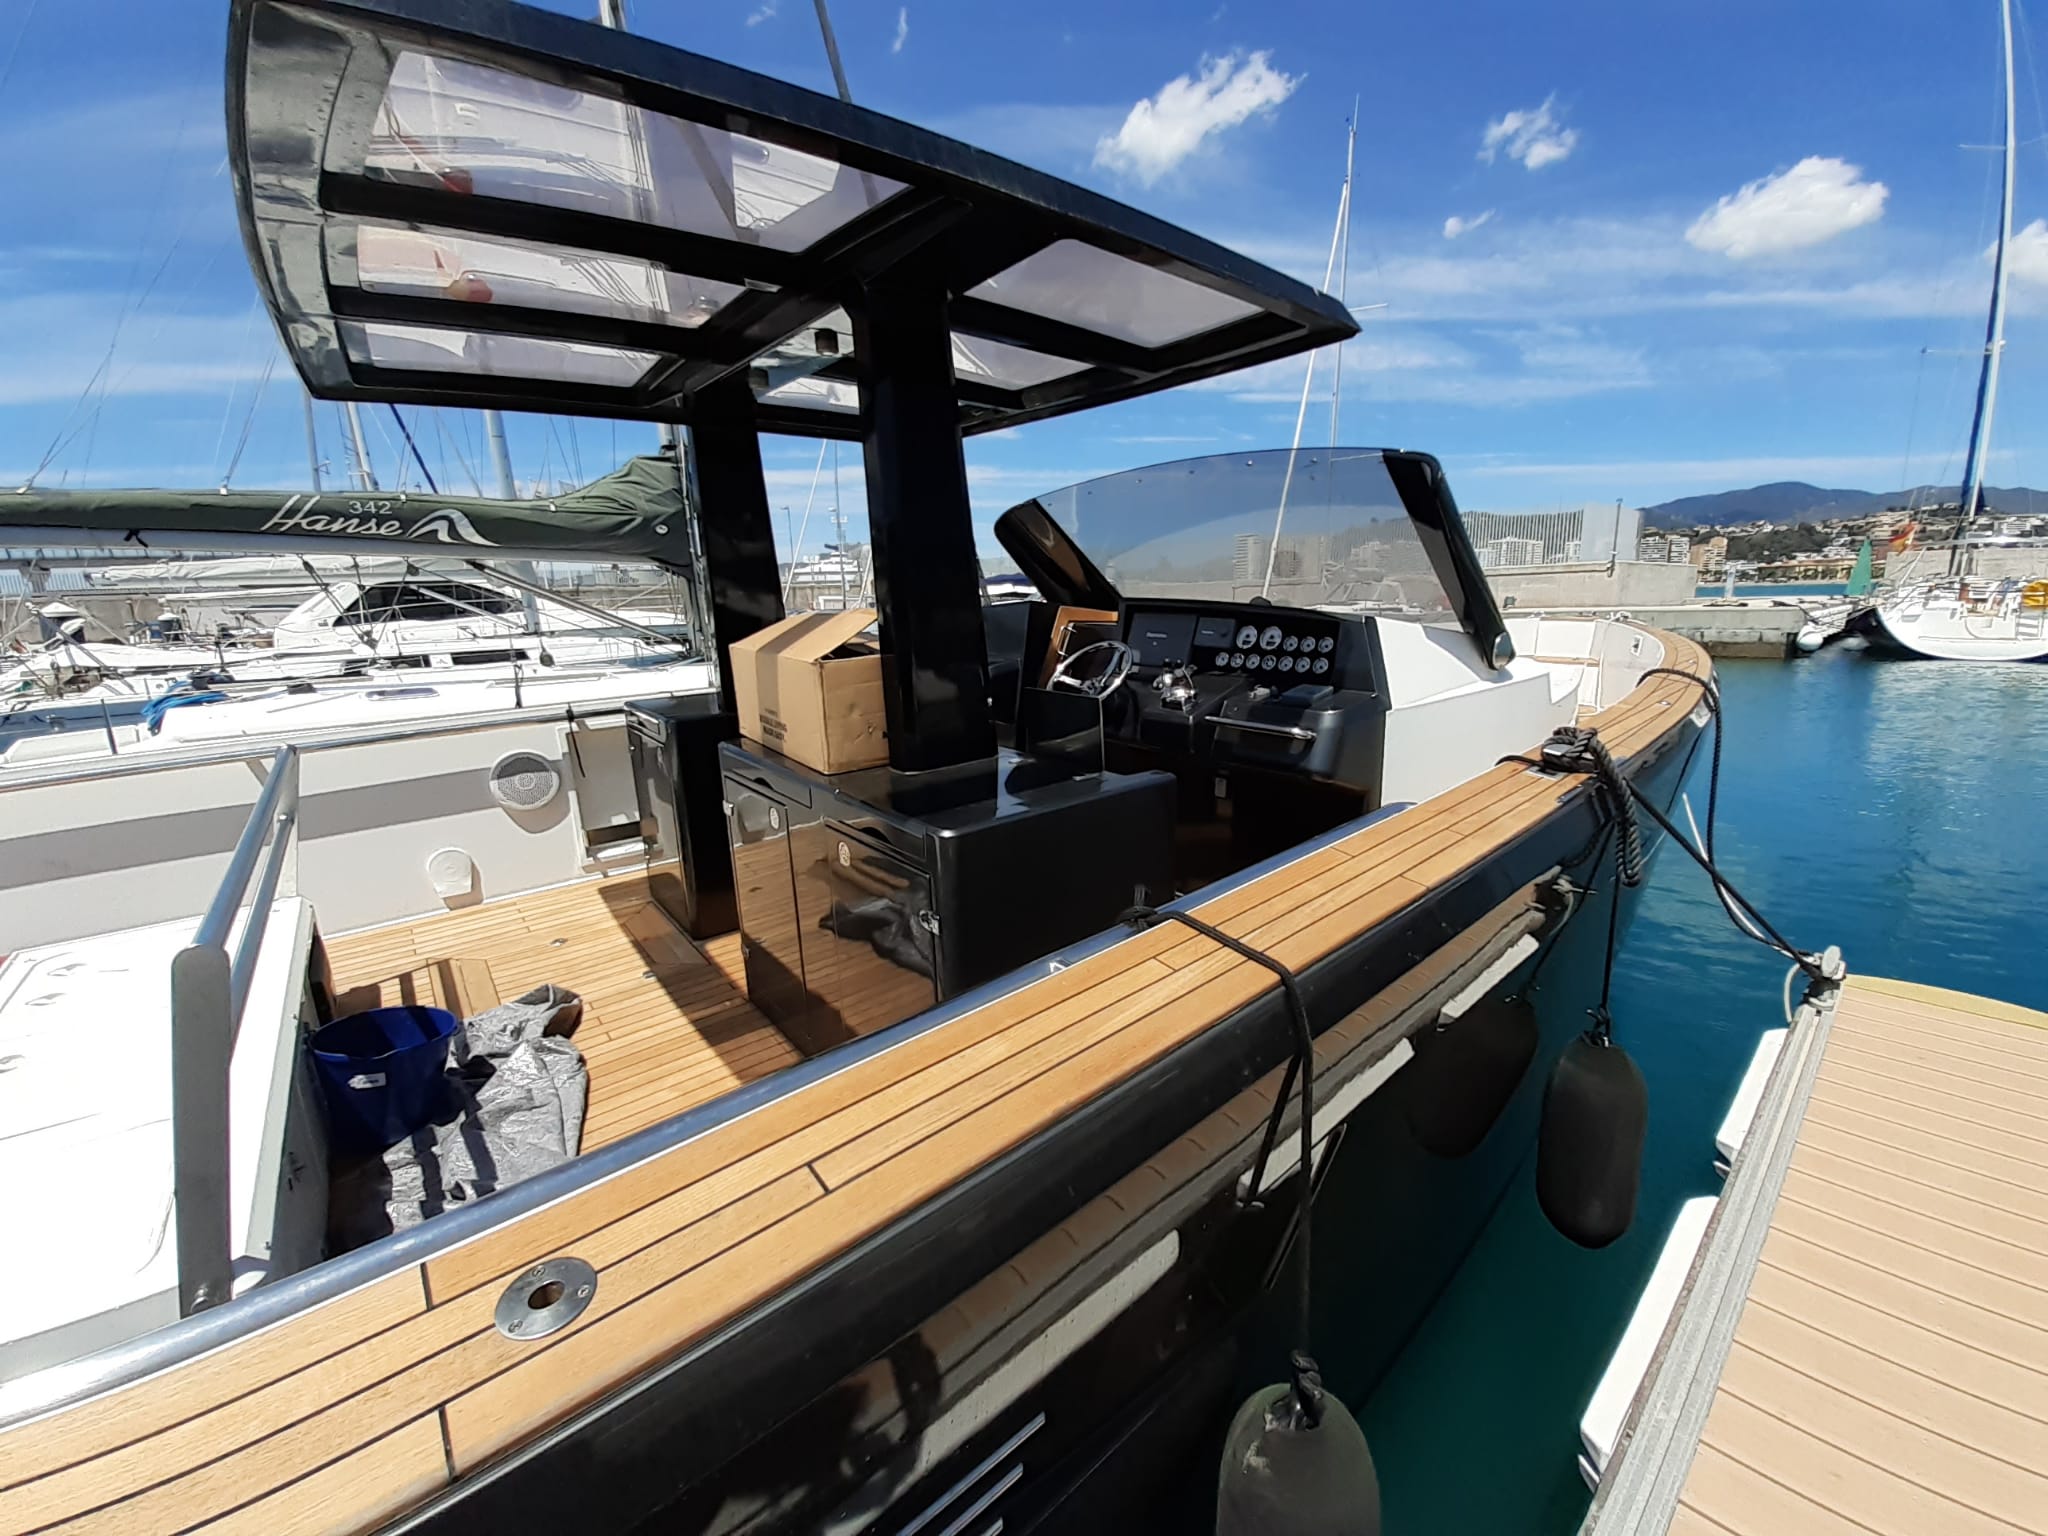 Fjord 40 Open - Motor Boat Charter Balearics & Boat hire in Spain Balearic Islands Ibiza and Formentera Ibiza Ibiza Marina Port Ibiza 2